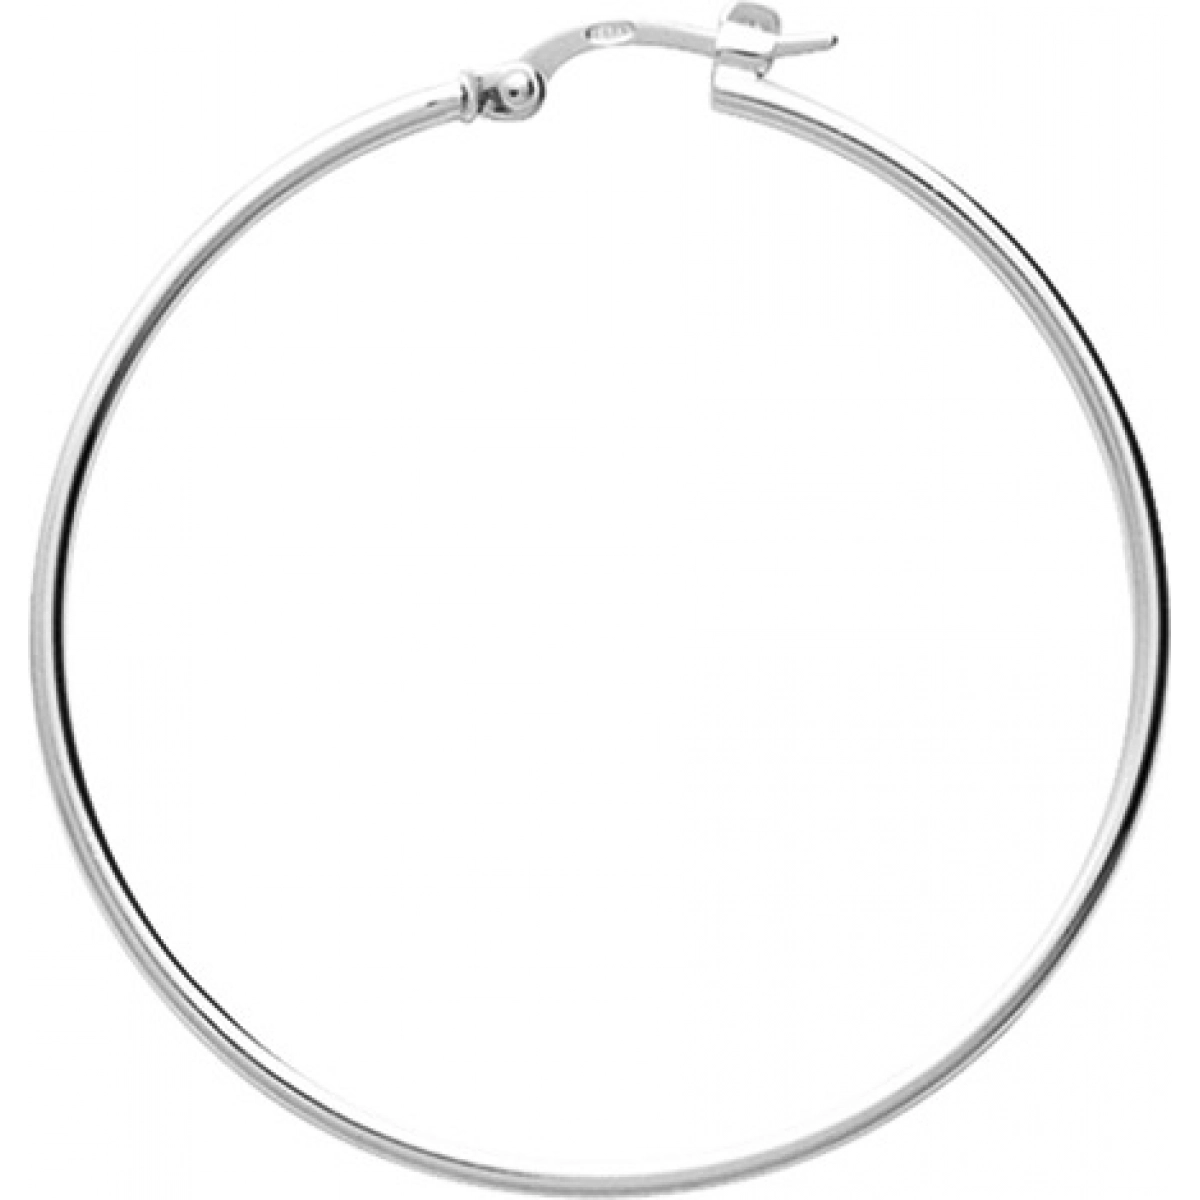 Hoops earrings pair 35mm rh925 Silver  Lua Blanca  305279.0